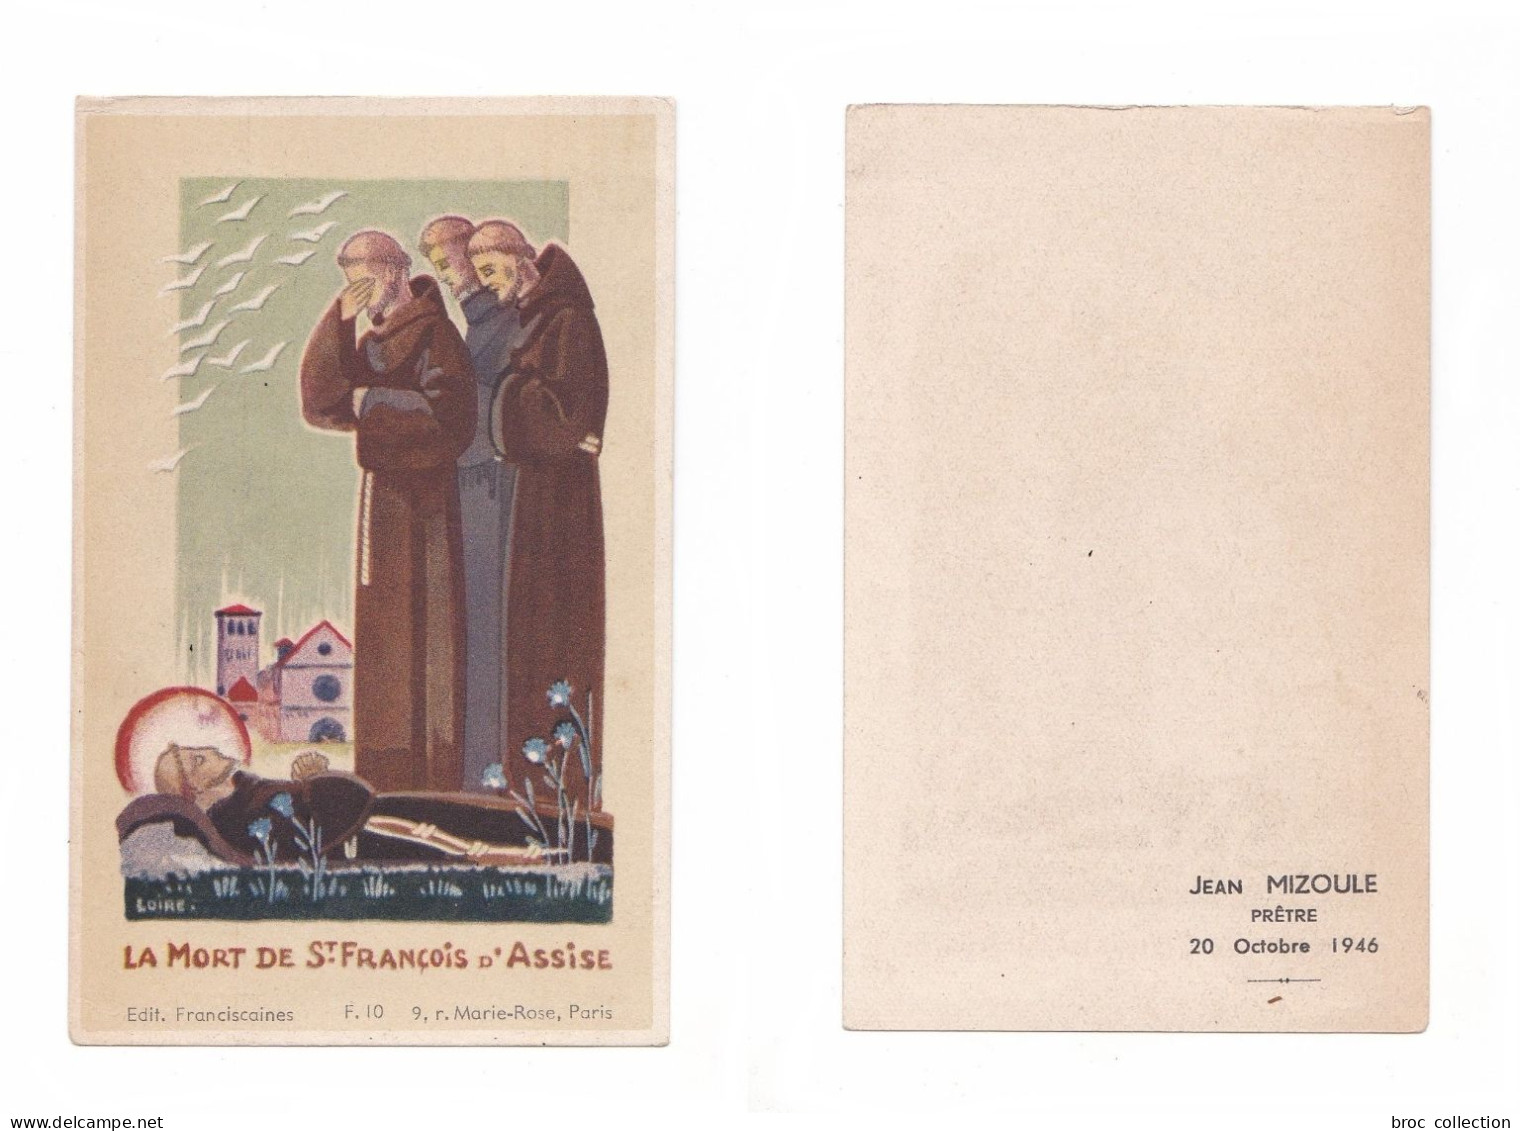 La Mort De Saint François D'Assise, Éditions Franciscaines F. 10, 1946, Jean Mizoule, Prêtre - Images Religieuses